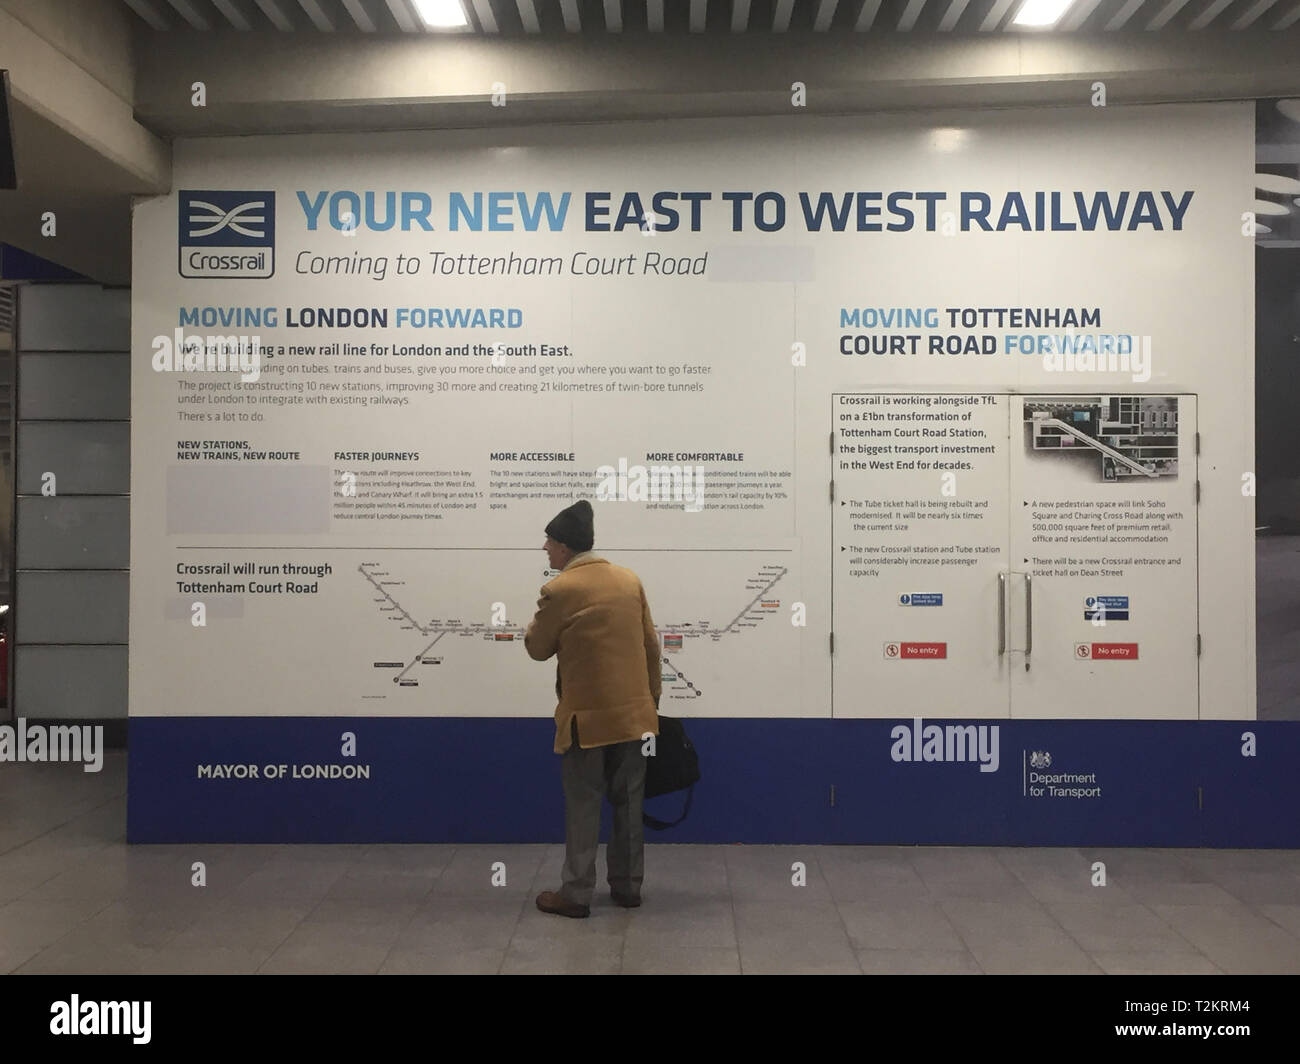 Undatierte Aufnahme eines Crossrail-Posters am U-Bahnhof Tottenham Court Road mit Hinweisen auf die Crossrail-Eröffnung im Dezember 2018 vertuscht, da Abgeordnete gefordert haben, dass die Verantwortung für Crossrail-Ausfälle von der Regierung erklärt werden muss. Stockfoto